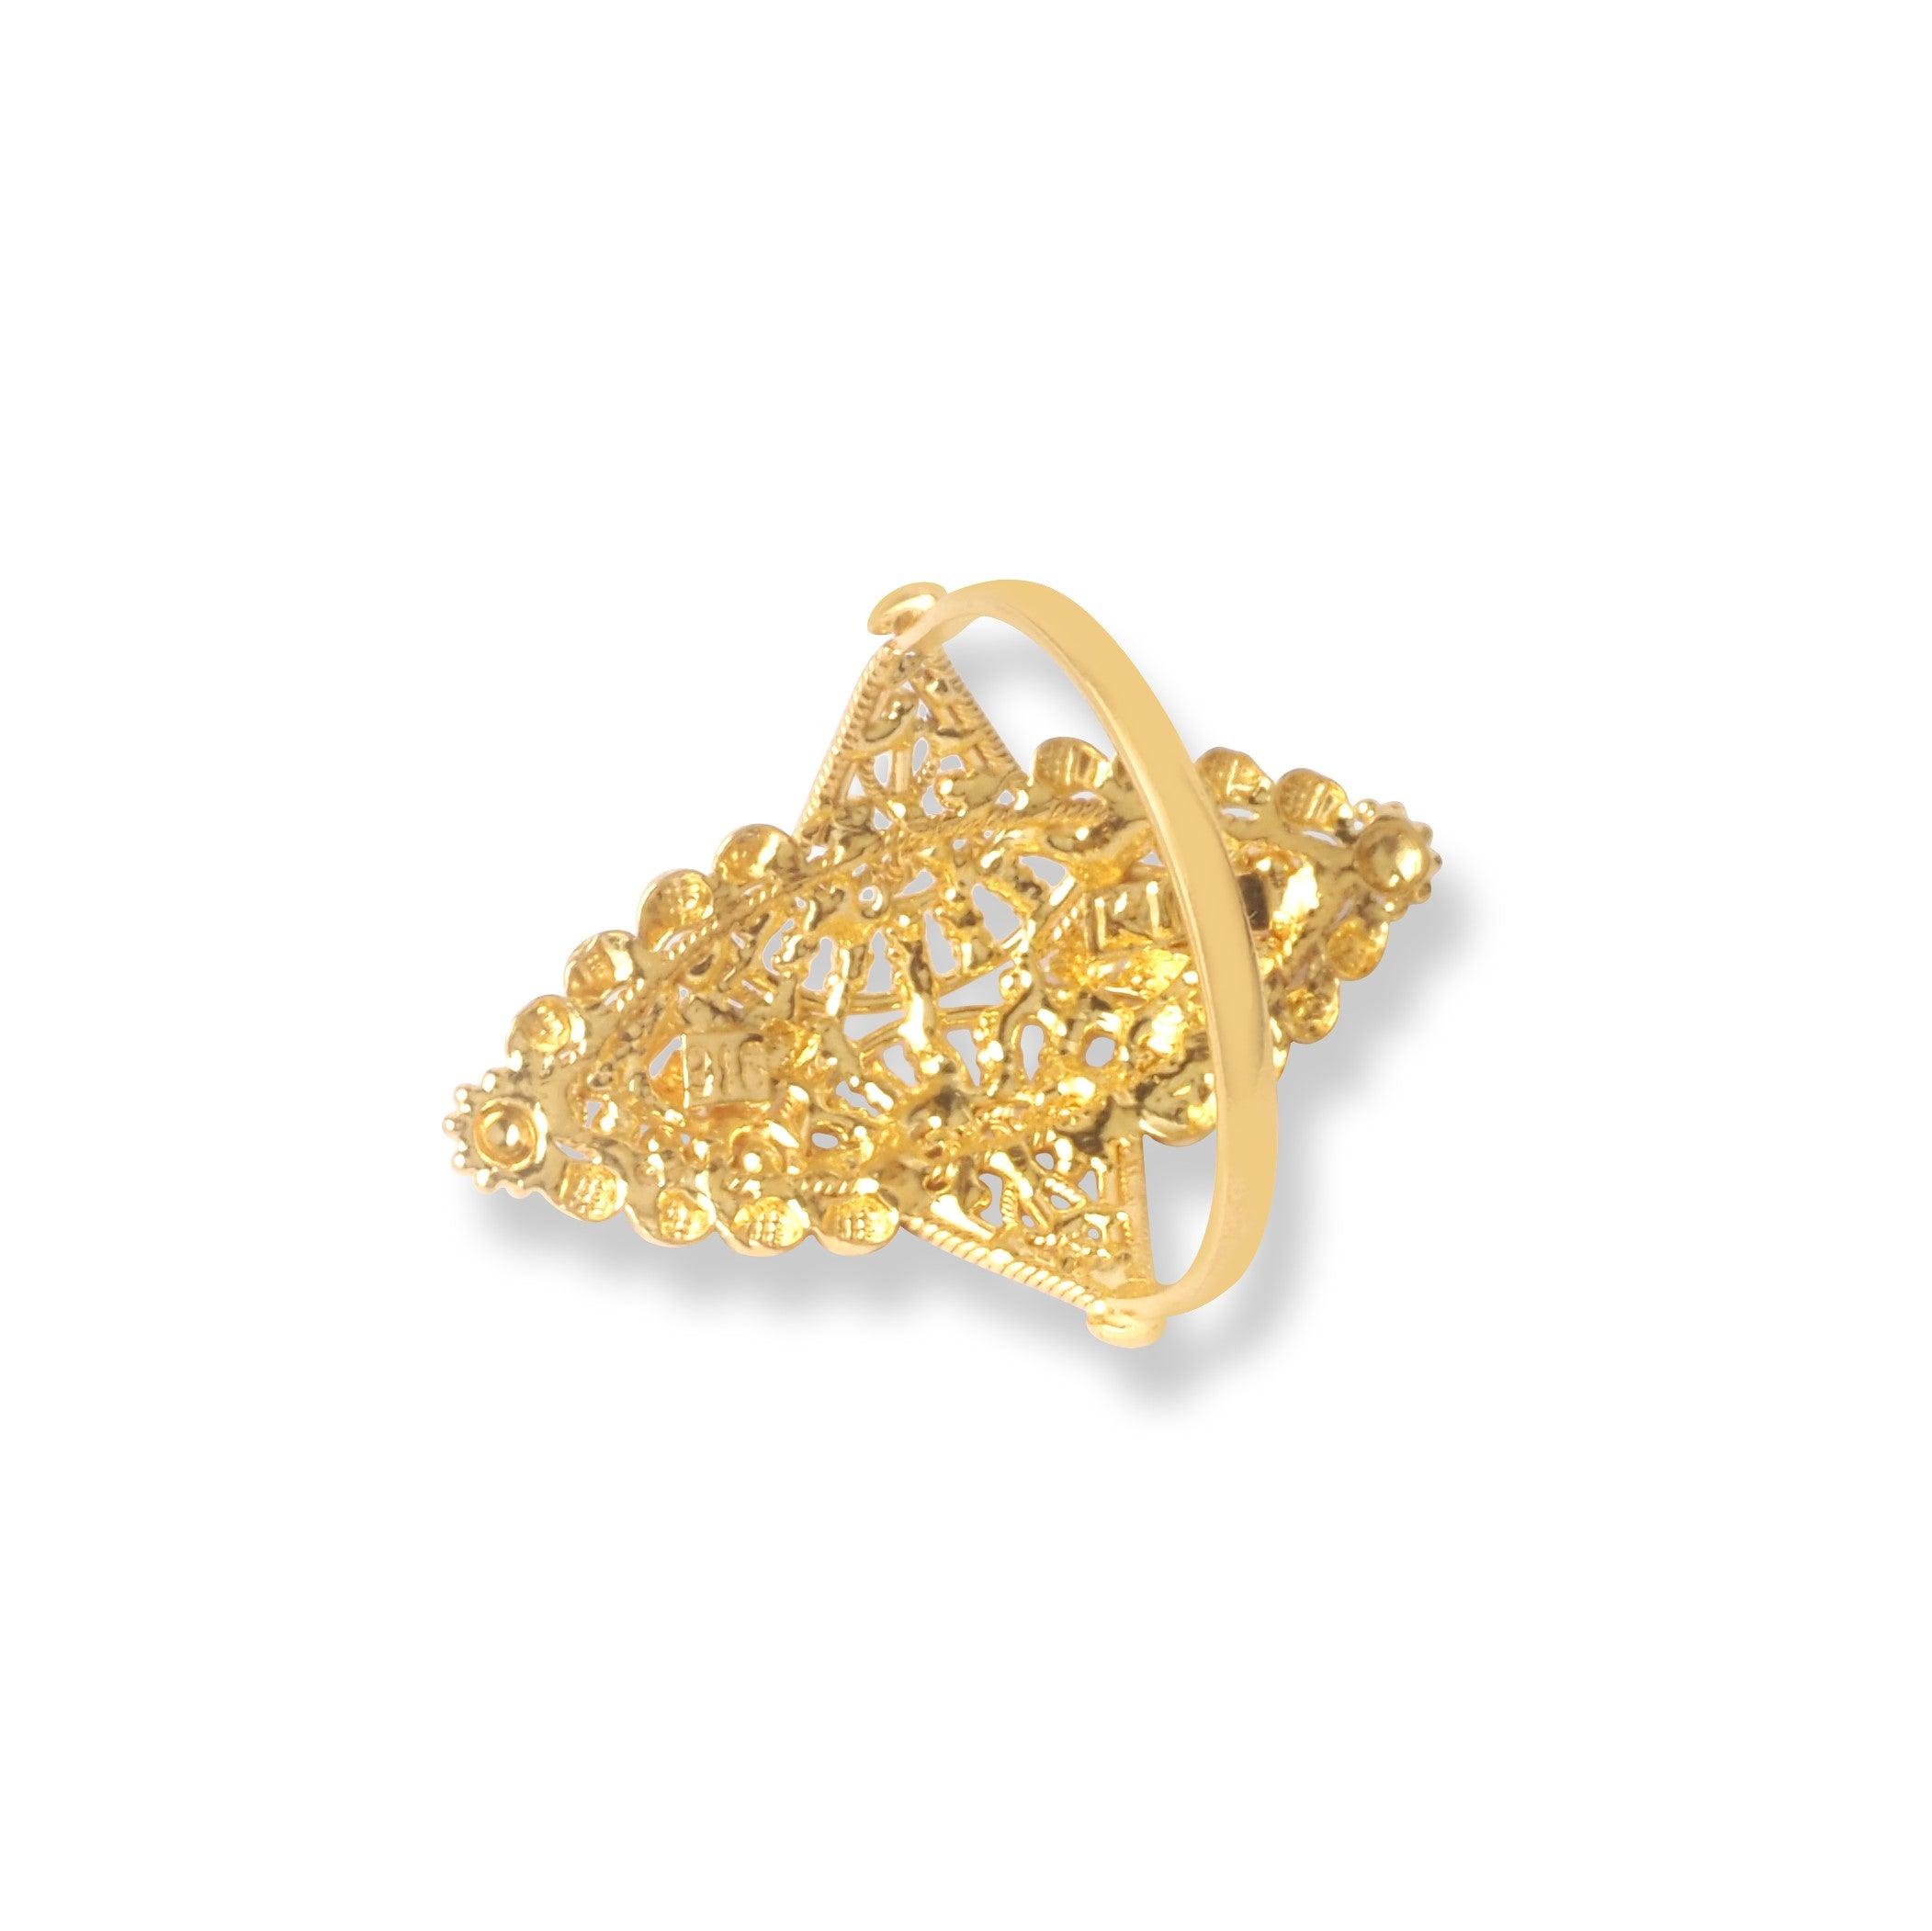 22ct Gold Filigree Ring (3.4g) LR-6566 - Minar Jewellers